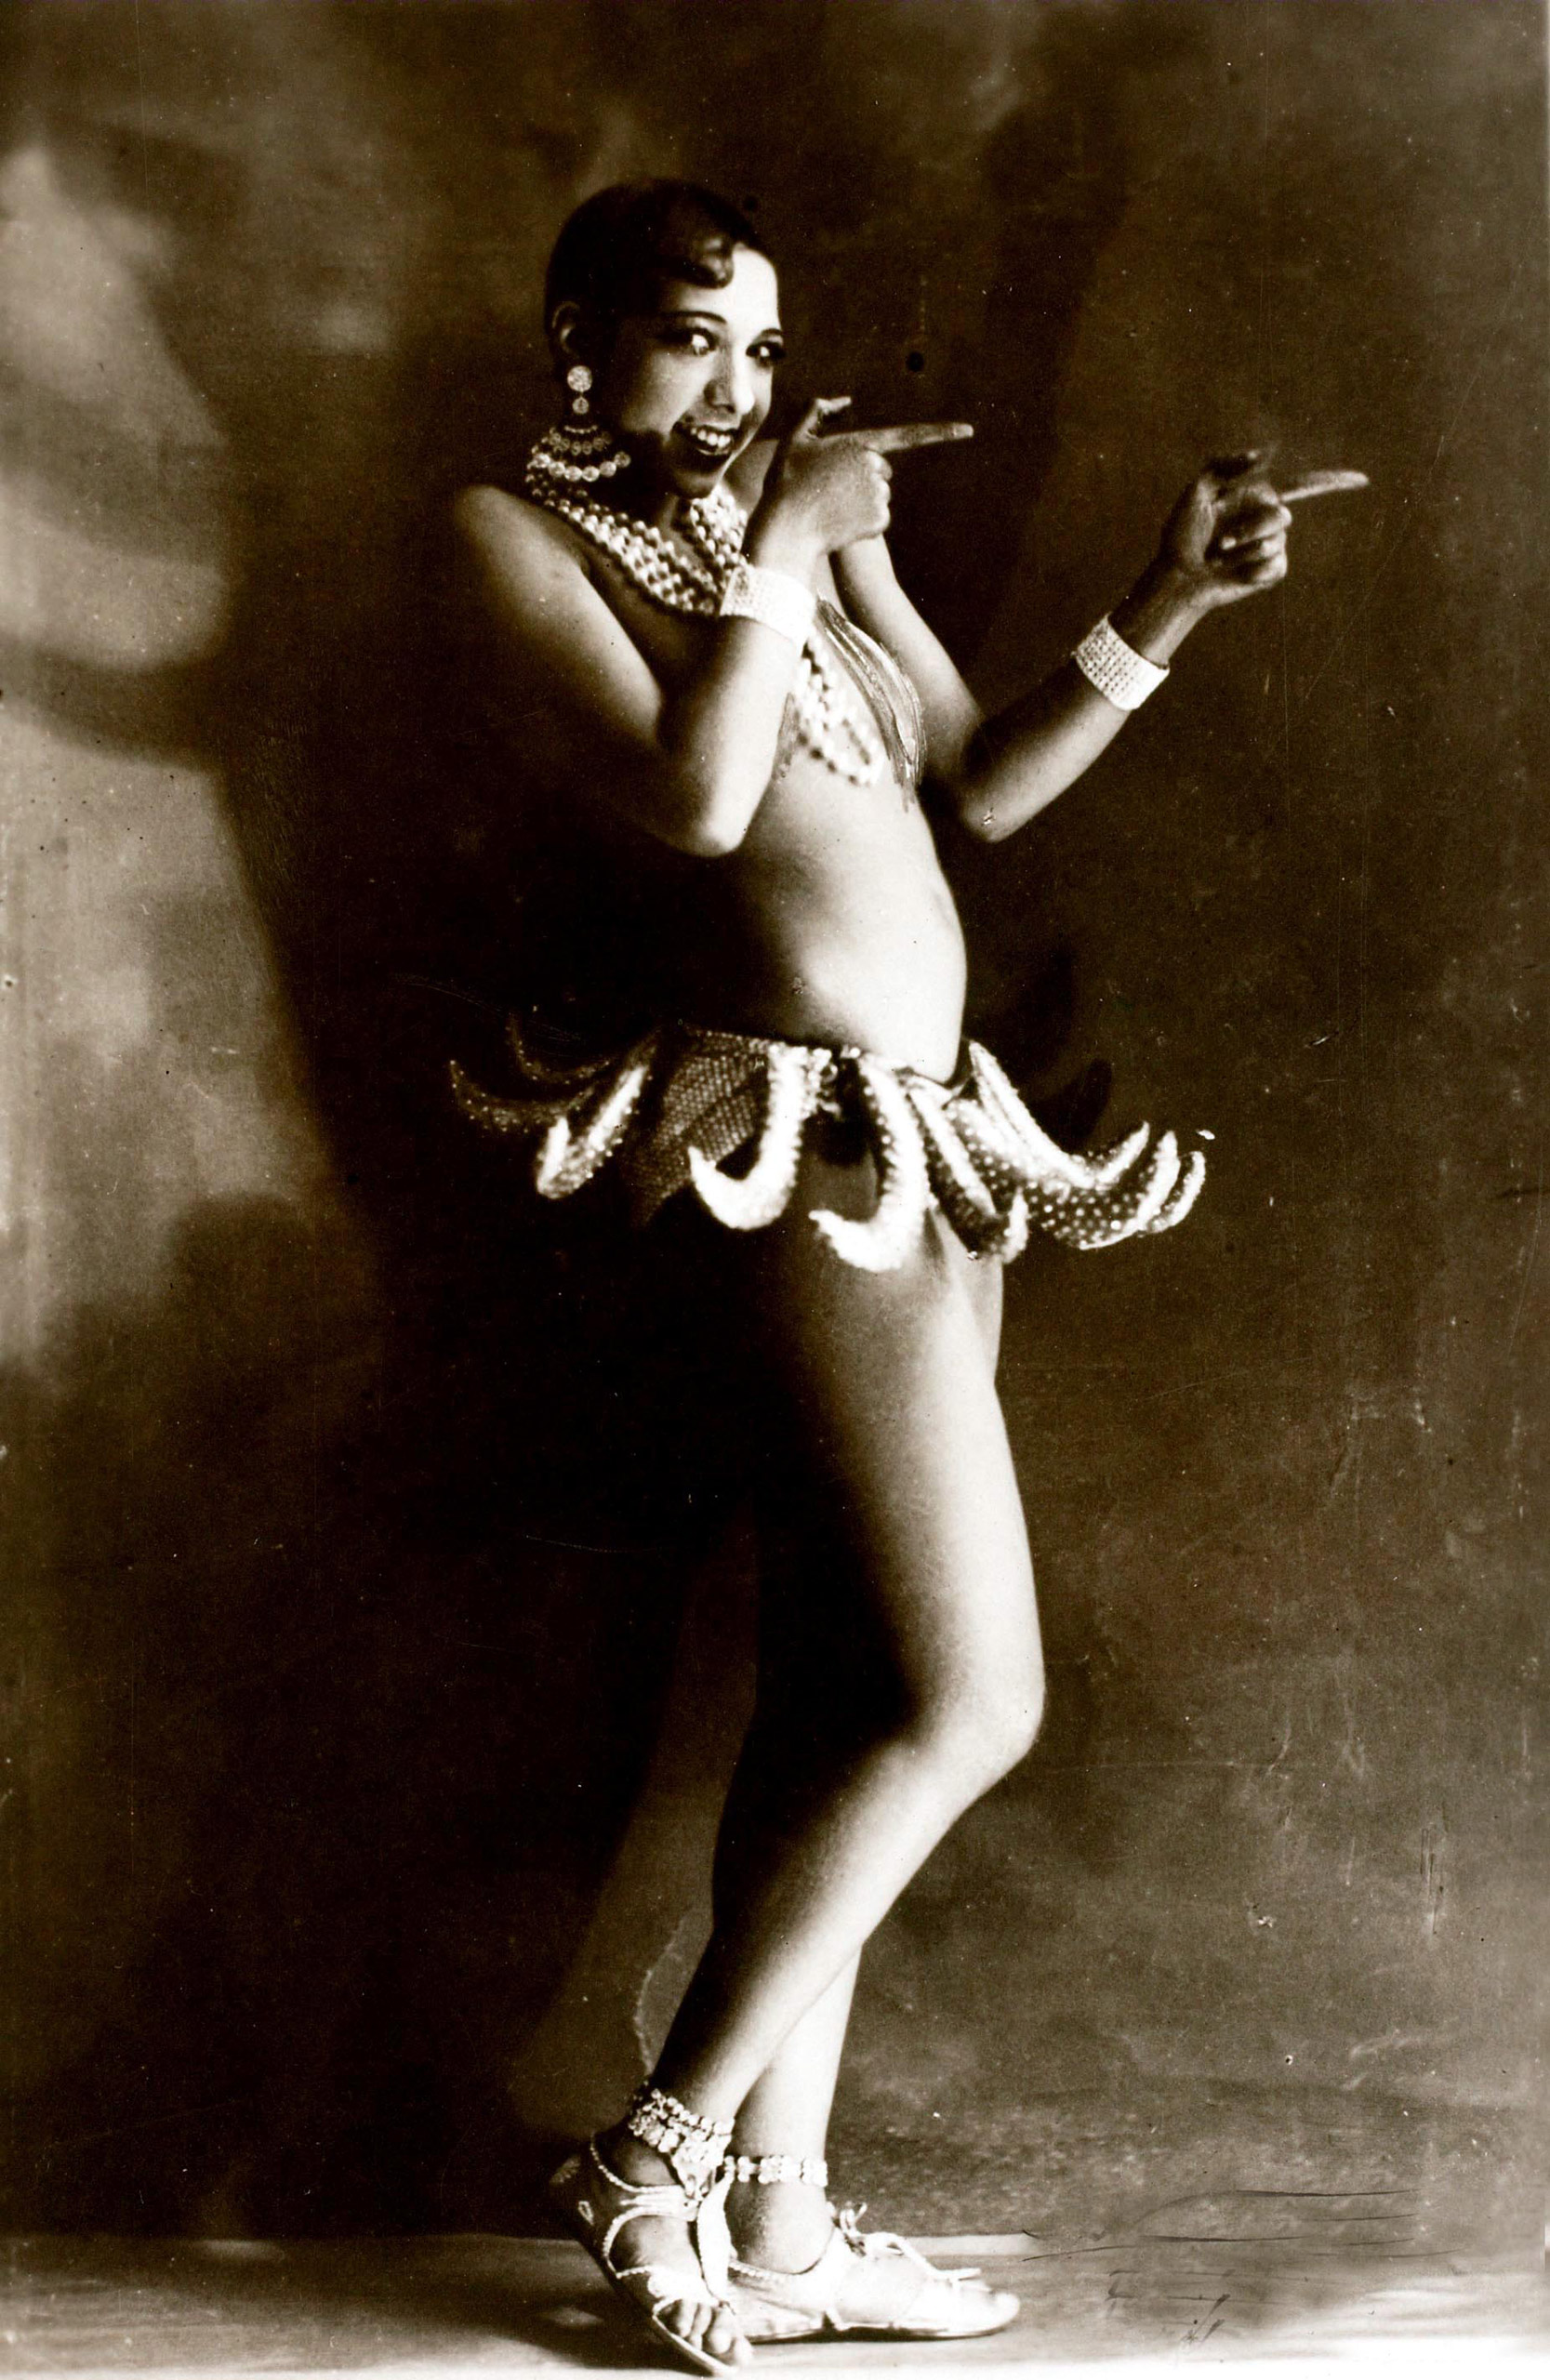 Josephine Baker wearing her famous banana costume, circa 1926.